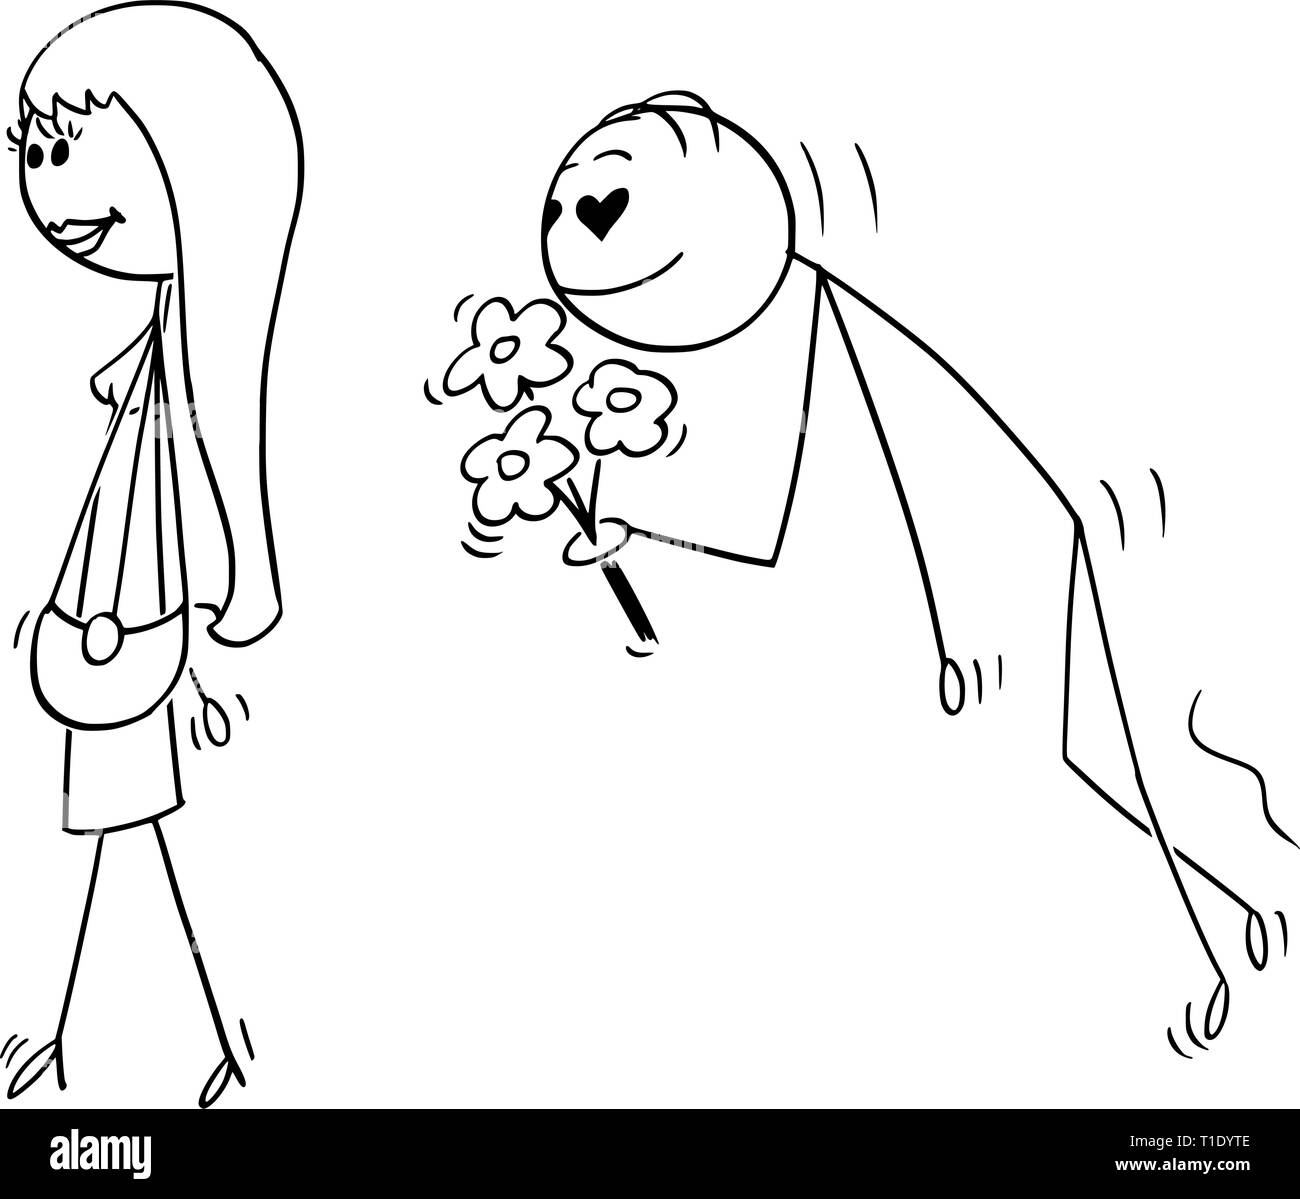 Cartoon Strichmännchen Zeichnen konzeptionelle Darstellung der attraktiven schöne junge Frau gefolgt von Enamored oder oder Amourösen Swain mit Augen in Form von Herzen und mit Blumen. Stock Vektor